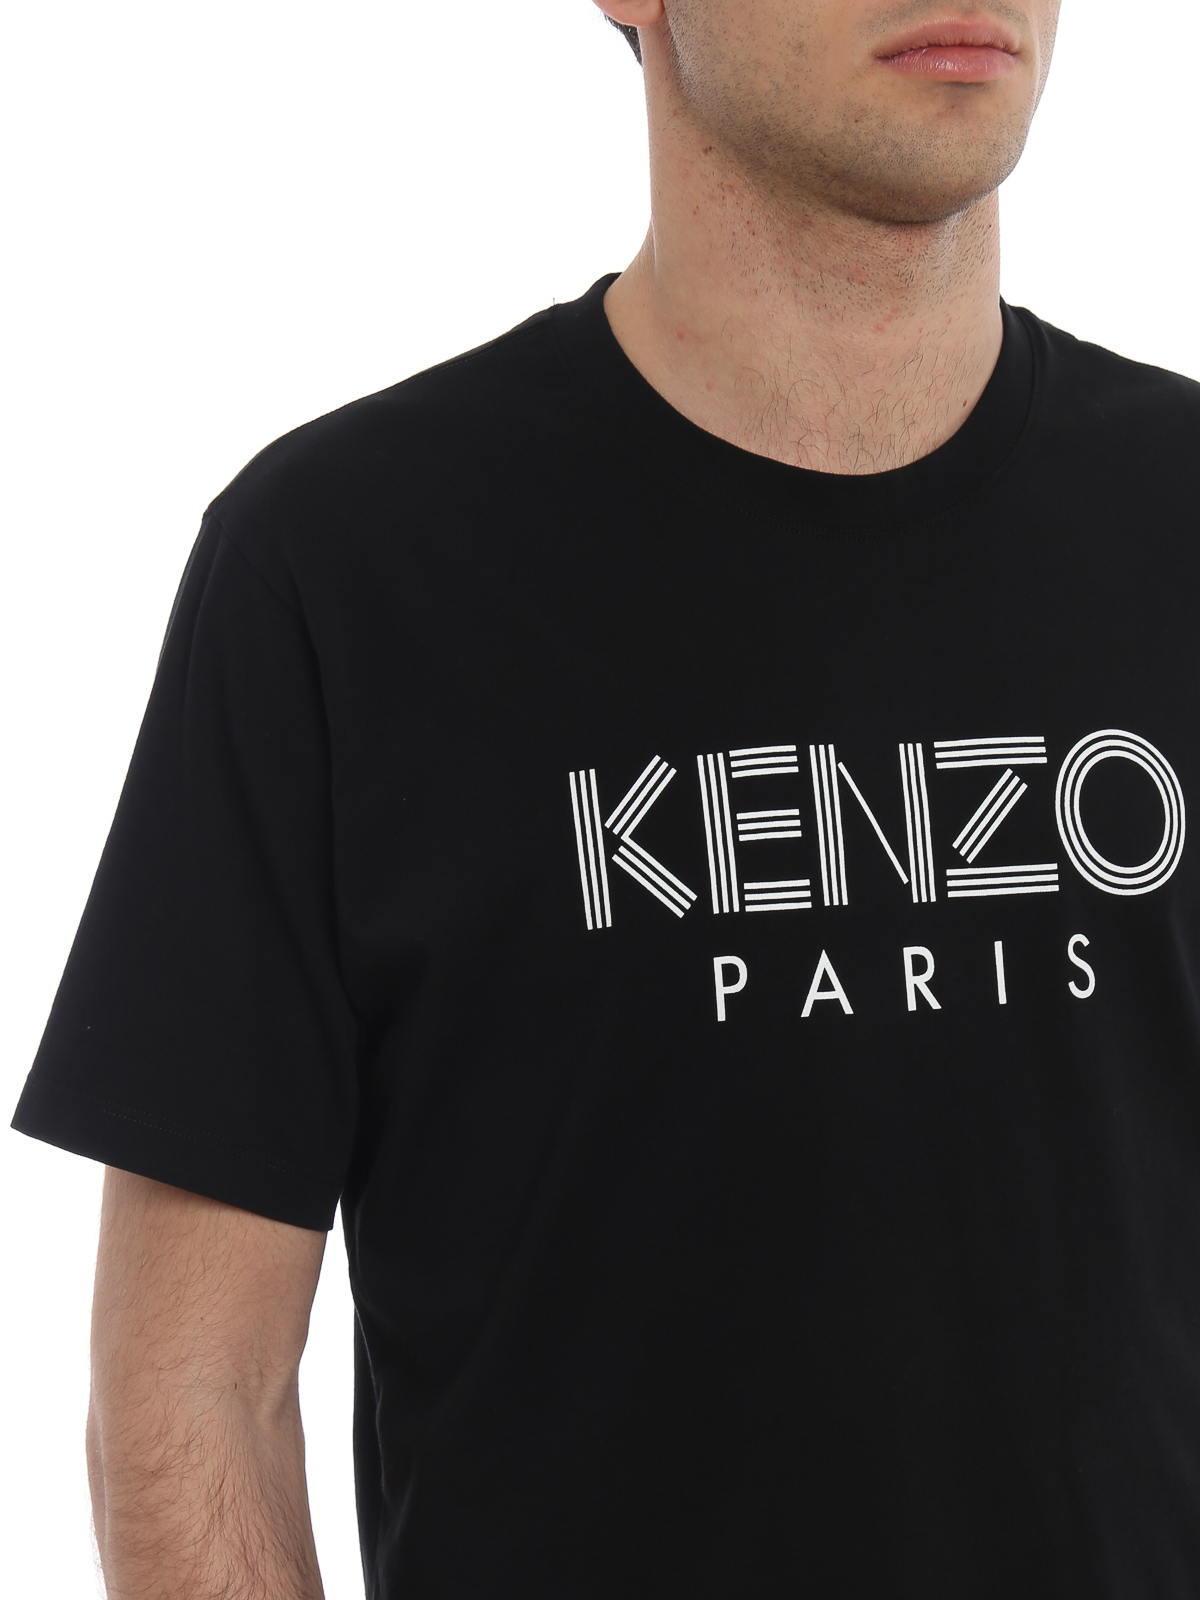 Kenzo - Kenzo Paris black slim T-shirt 